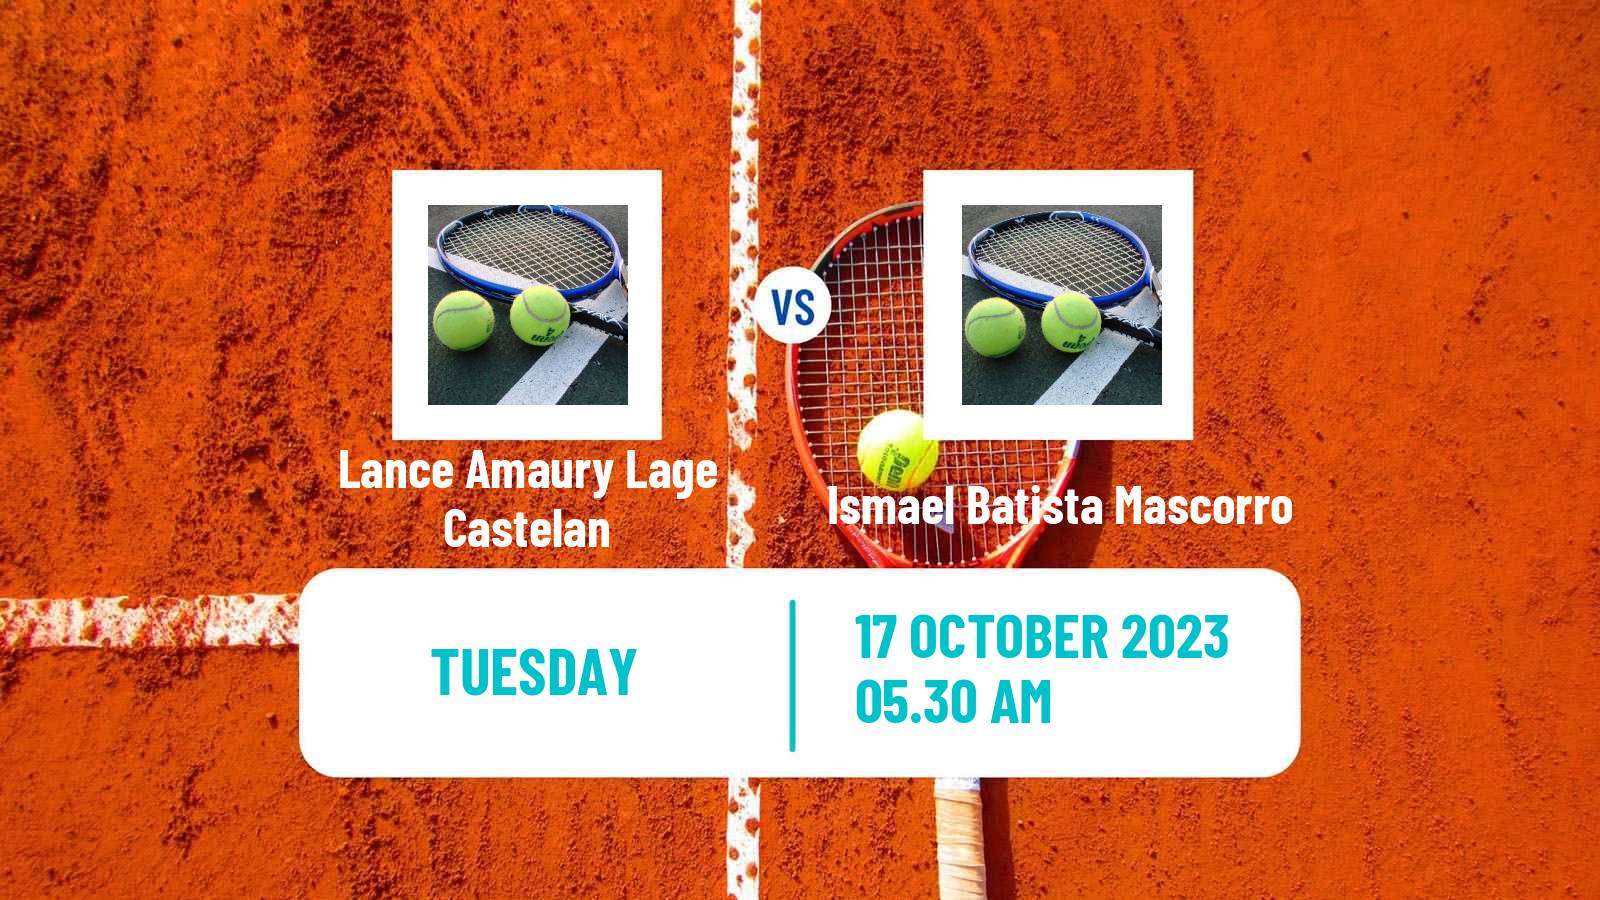 Tennis ITF M15 Morelia Men Lance Amaury Lage Castelan - Ismael Batista Mascorro